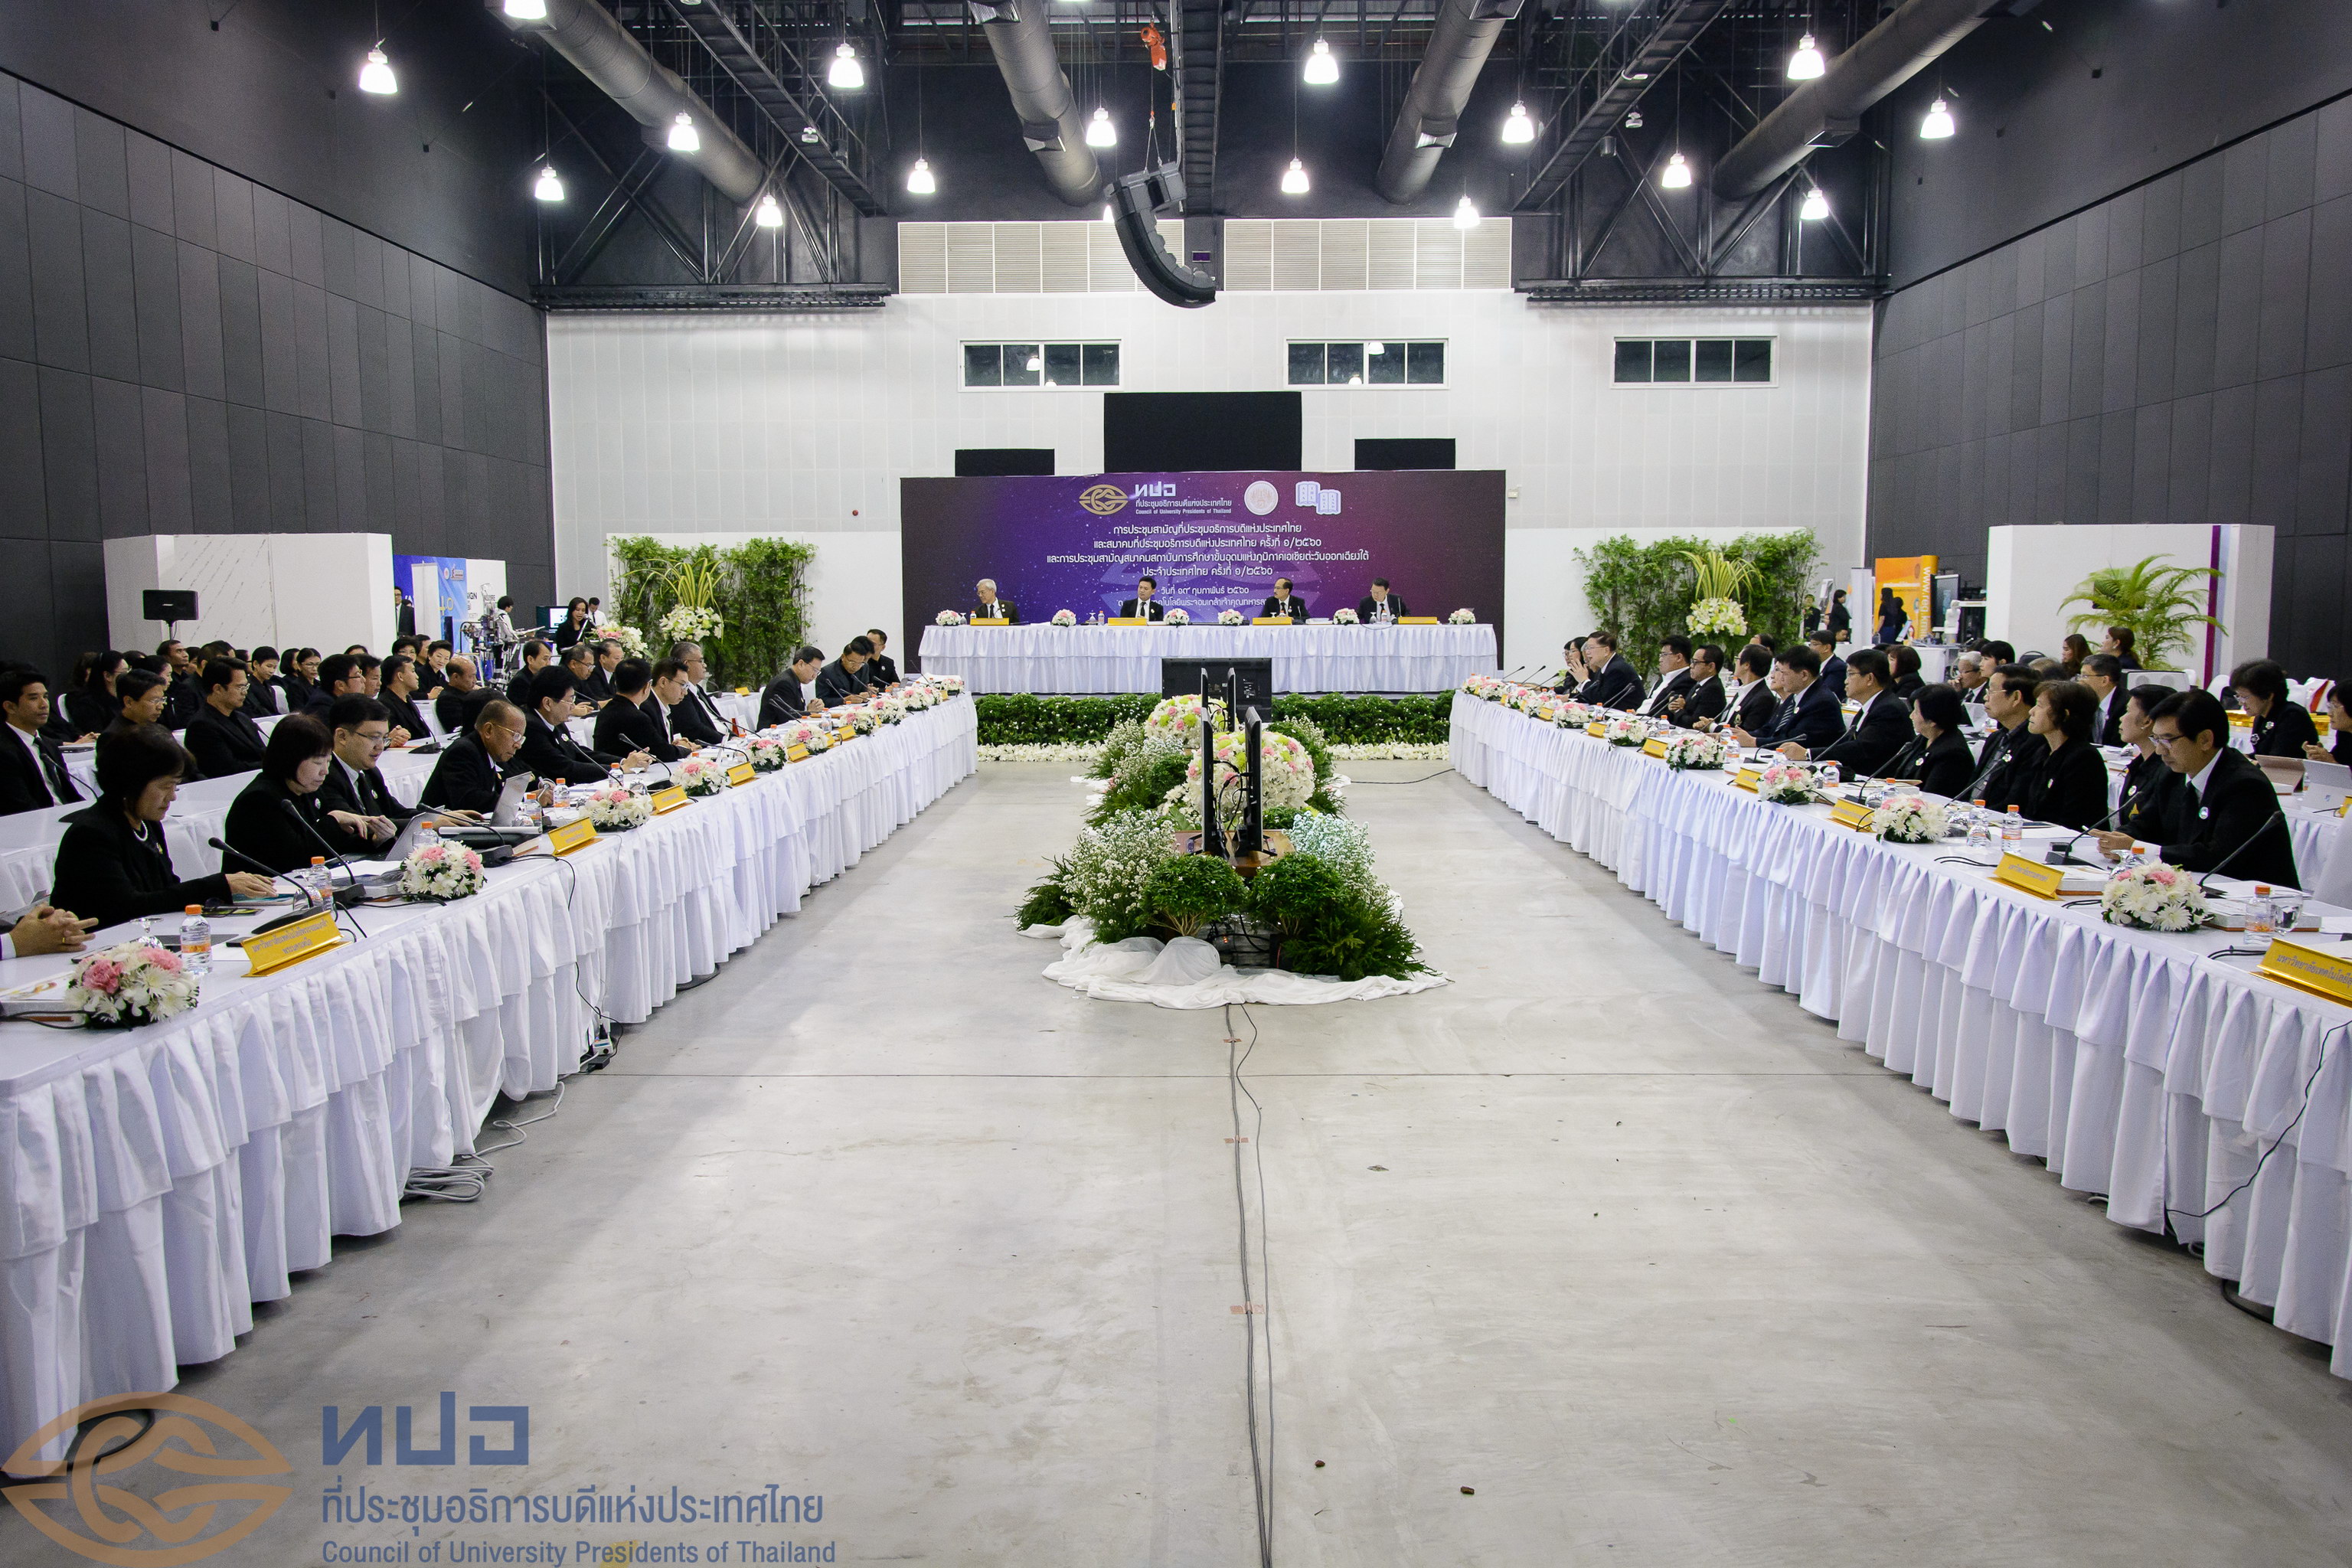 การประชุมสามัญที่ประชุมอธิการบดีแห่งประเทศไทยและสมาคมที่ประชุมอธิการบดีแห่งประเทศไทย ครั้งที่ 1/2560